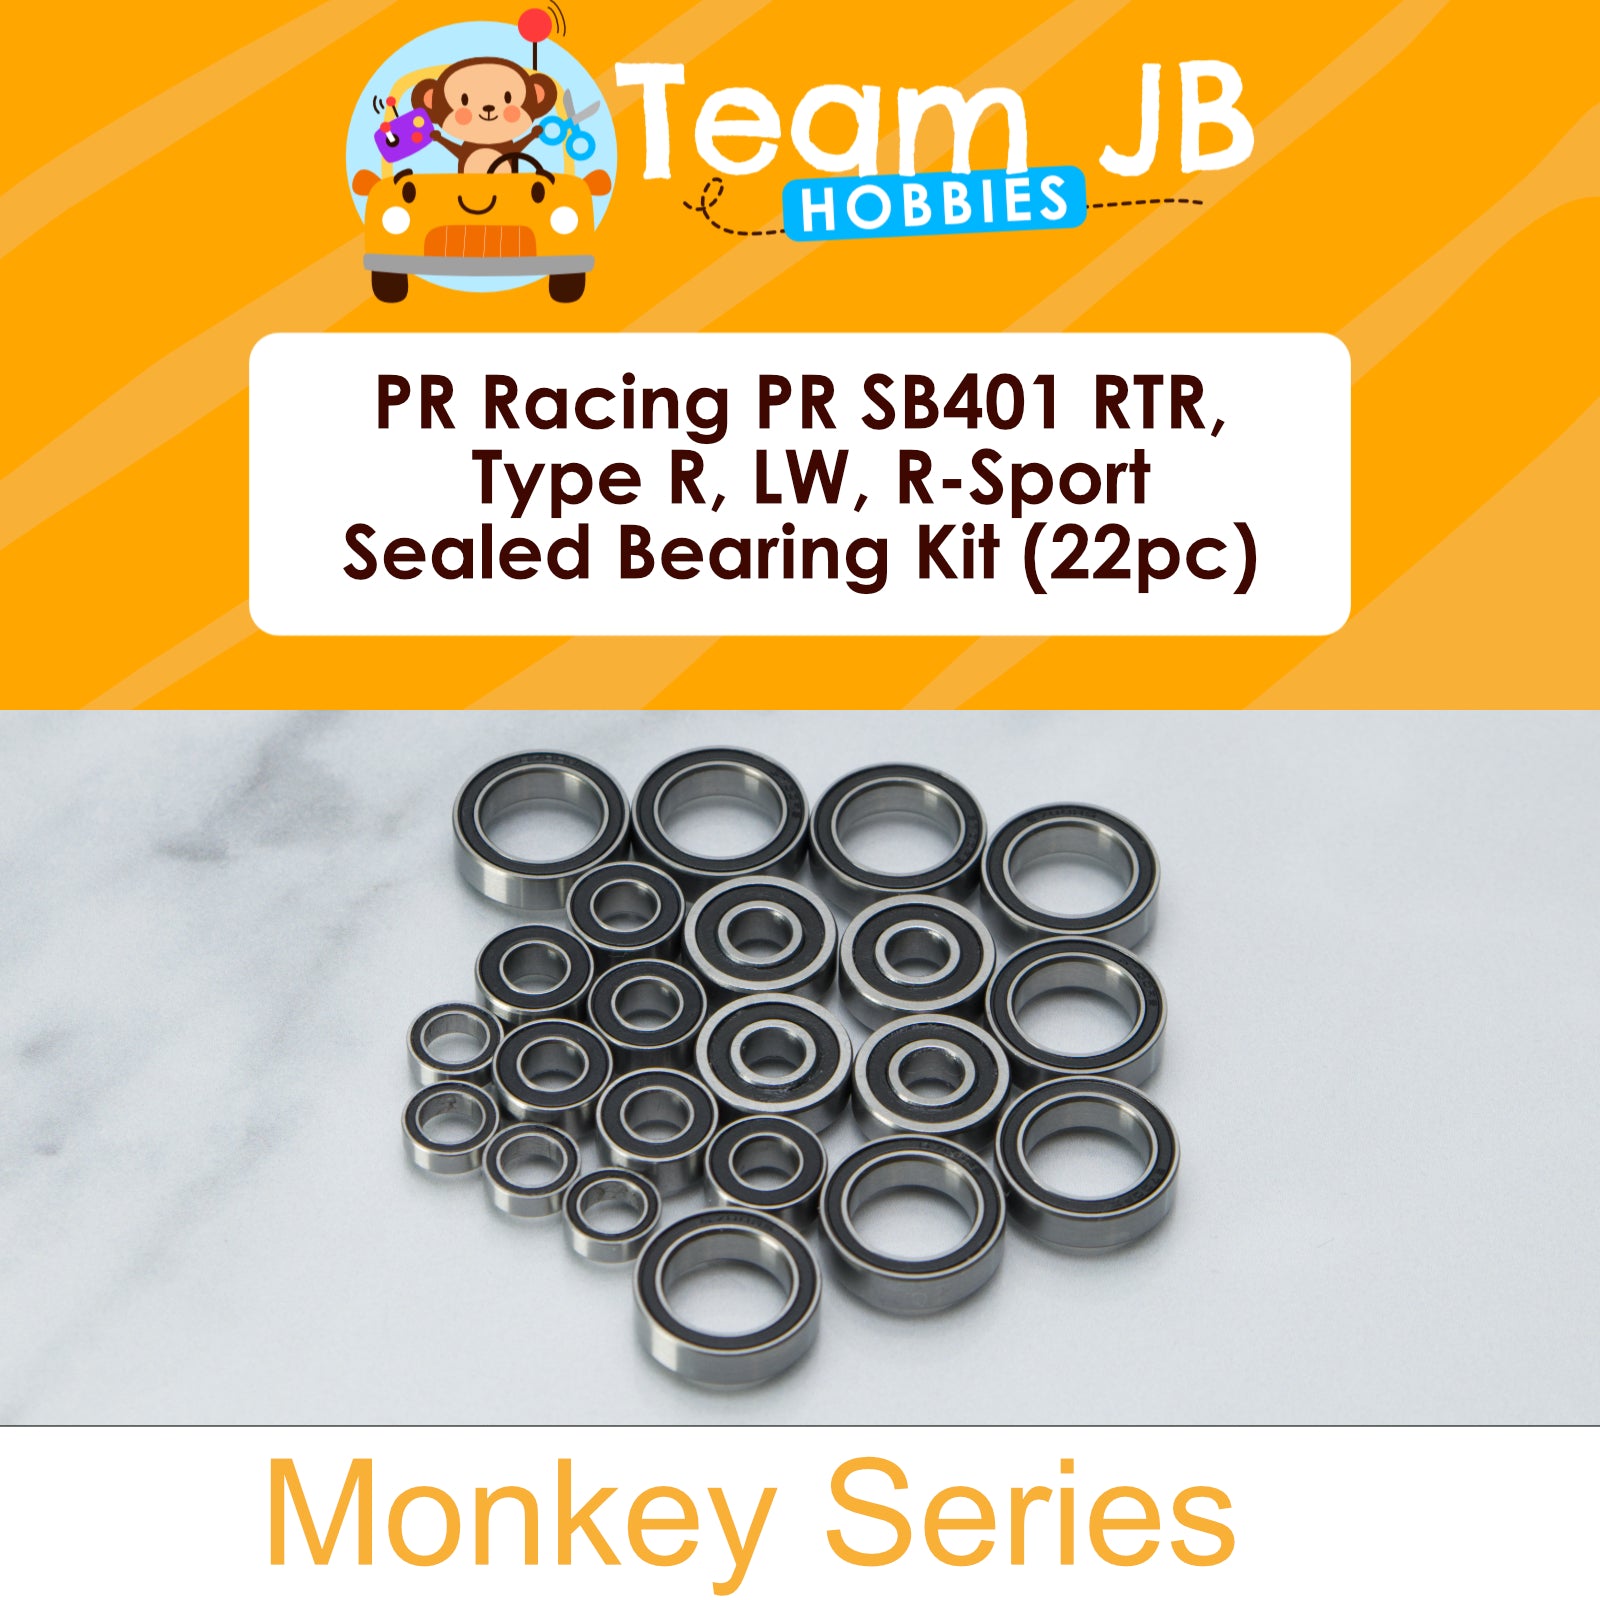 PR Racing PR SB401 RTR, Type R, LW, R-Sport - Sealed Bearing Kit